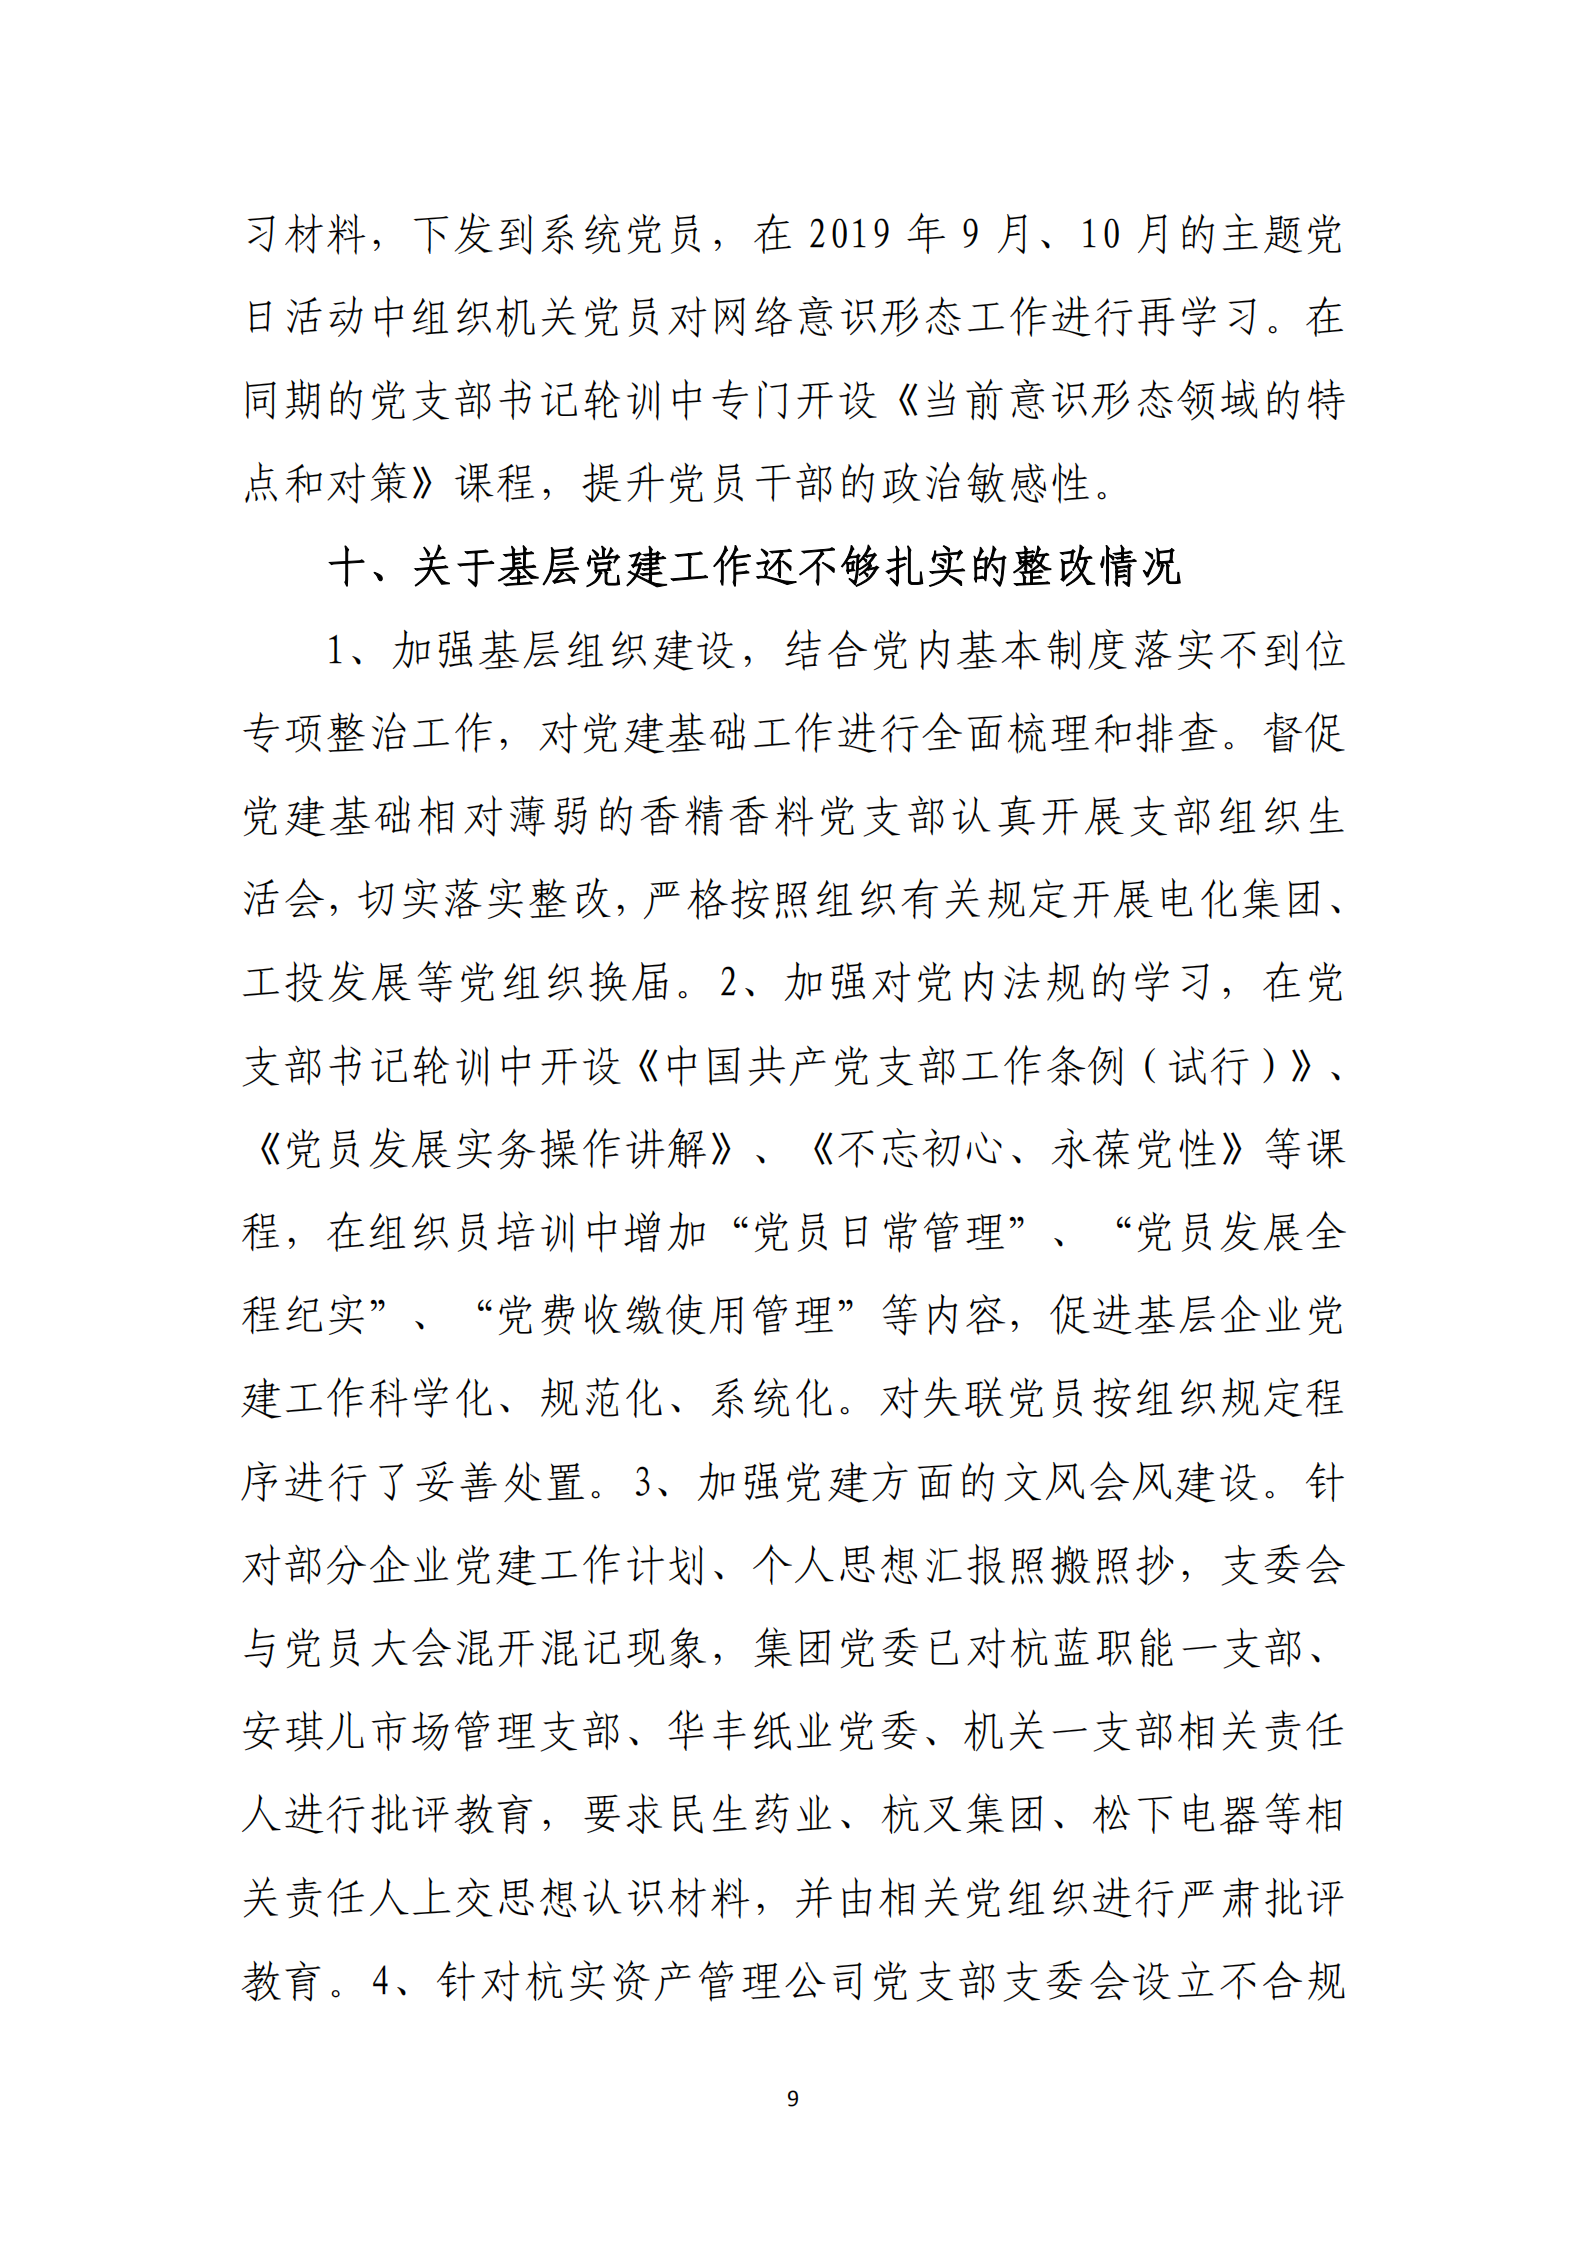 【体育365官方网站】中国有限公司党委关于巡察整改情况的通报_08.png